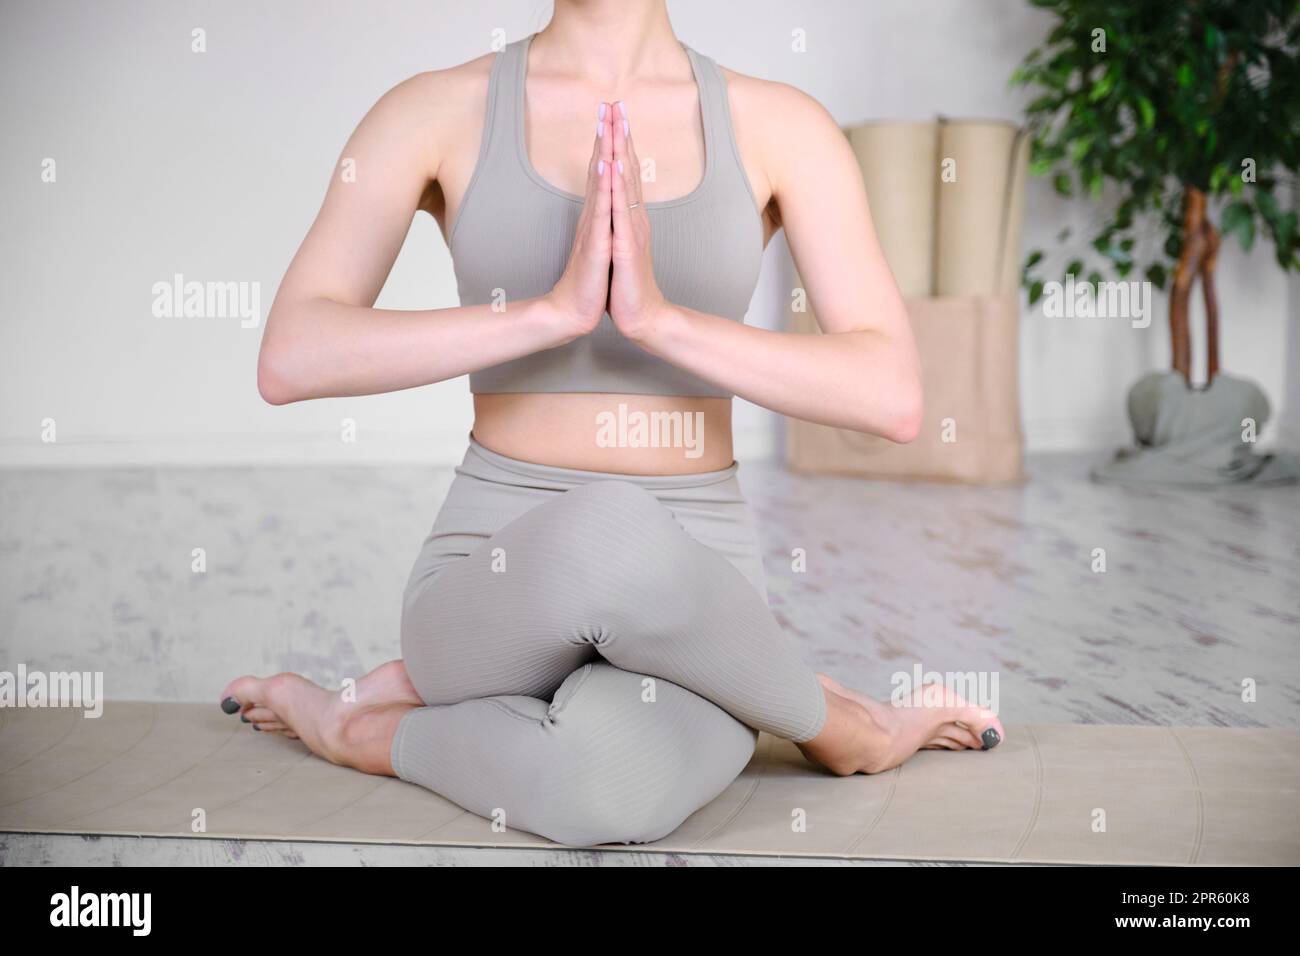 Schöner, athletischer weiblicher Körper in einer Halb-Lotusposition. Yoga, Meditation und Ruhe üben. Stockfoto